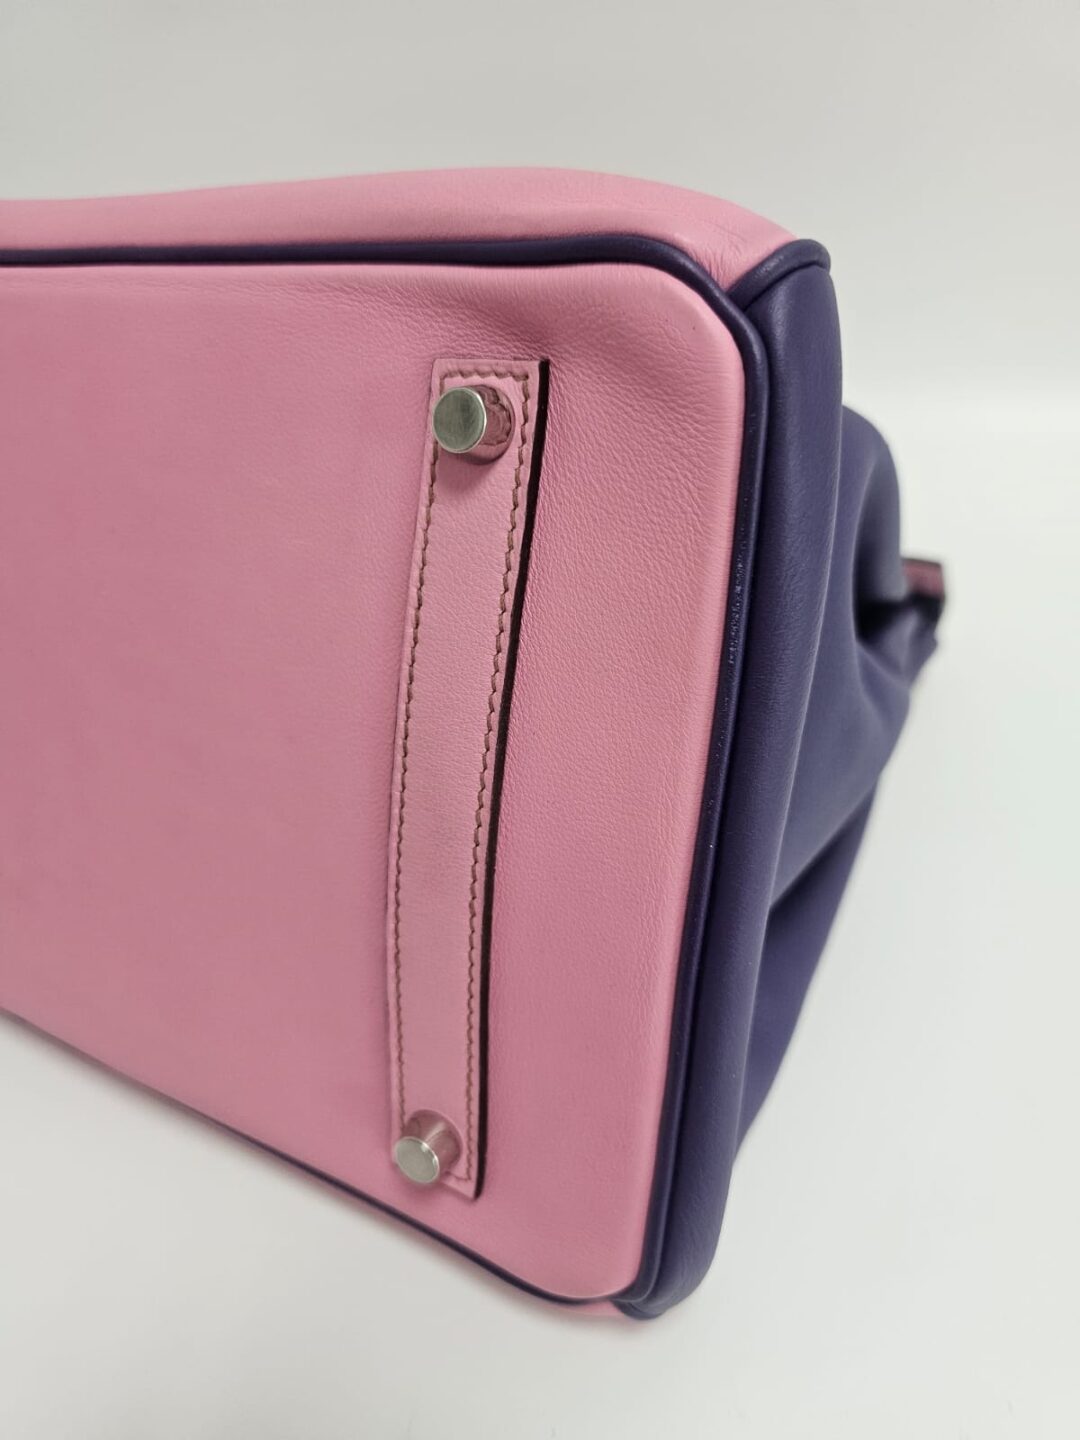 Hermès Birkin 35 Bubblegum 5P Pink Gold Hardware • Investment Bag